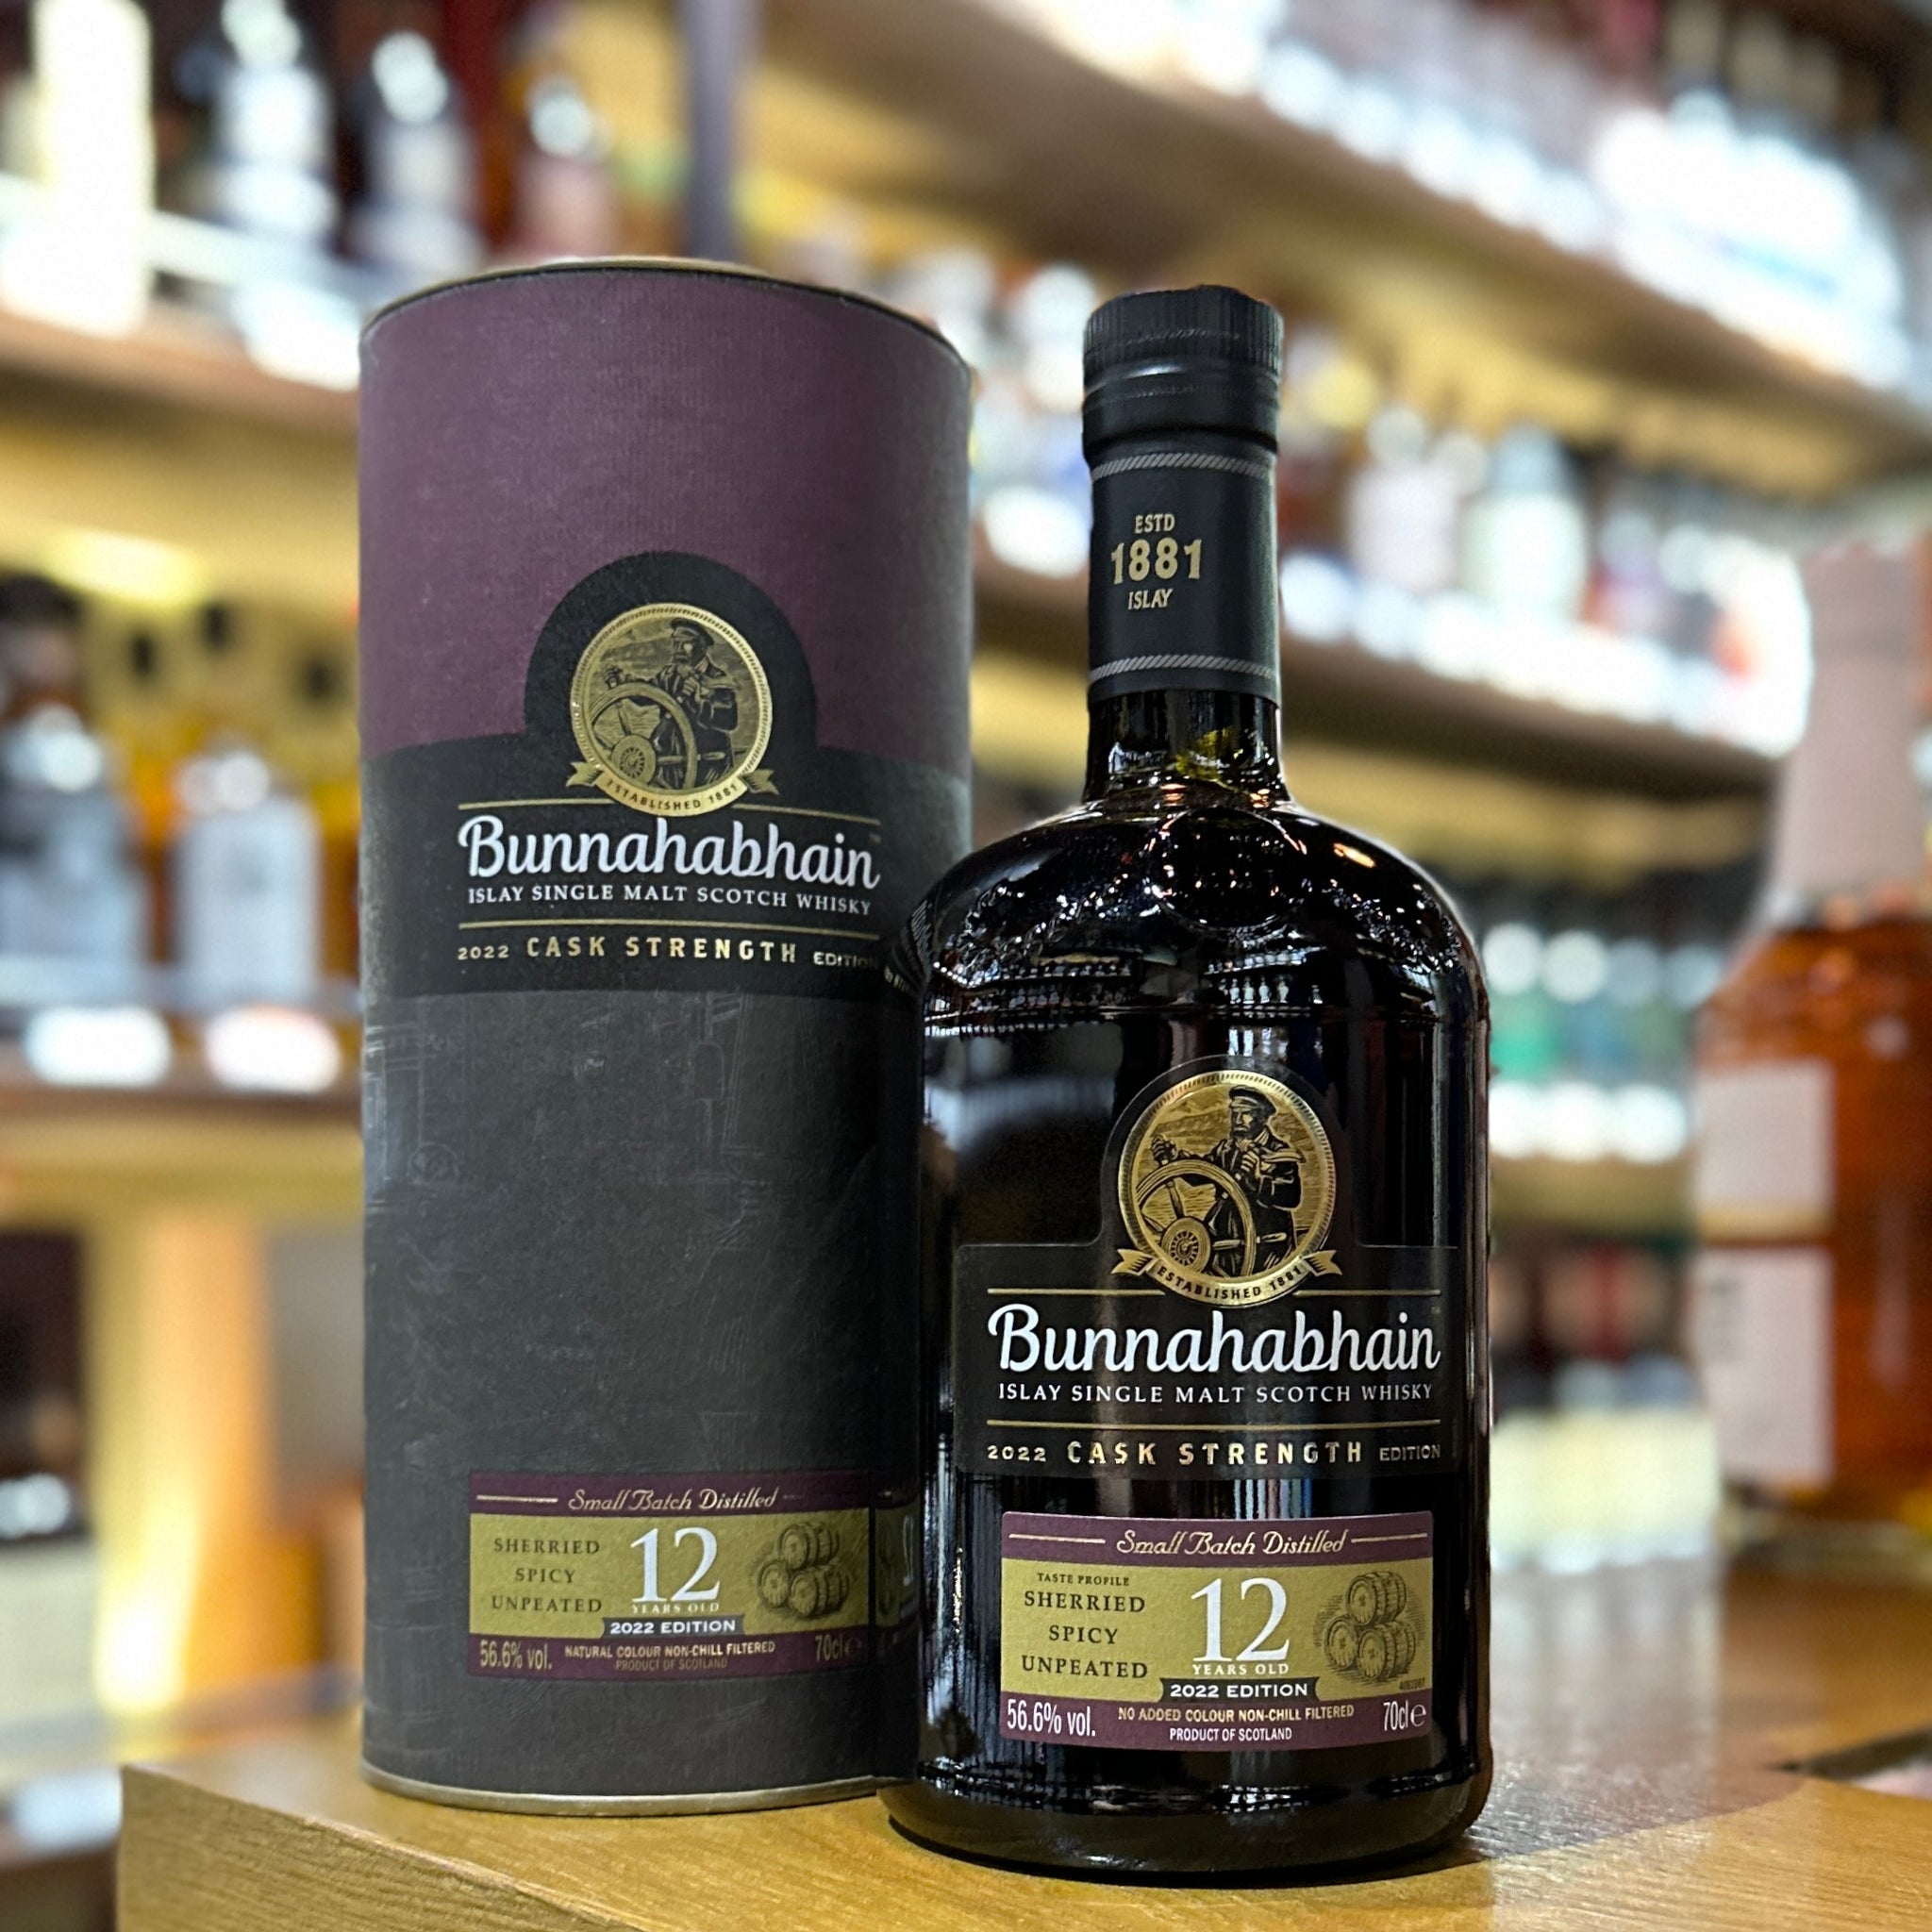 Bunnahabhain 12 Year Old Cask Strength Single Malt Scotch Whisky (2022 Edition)